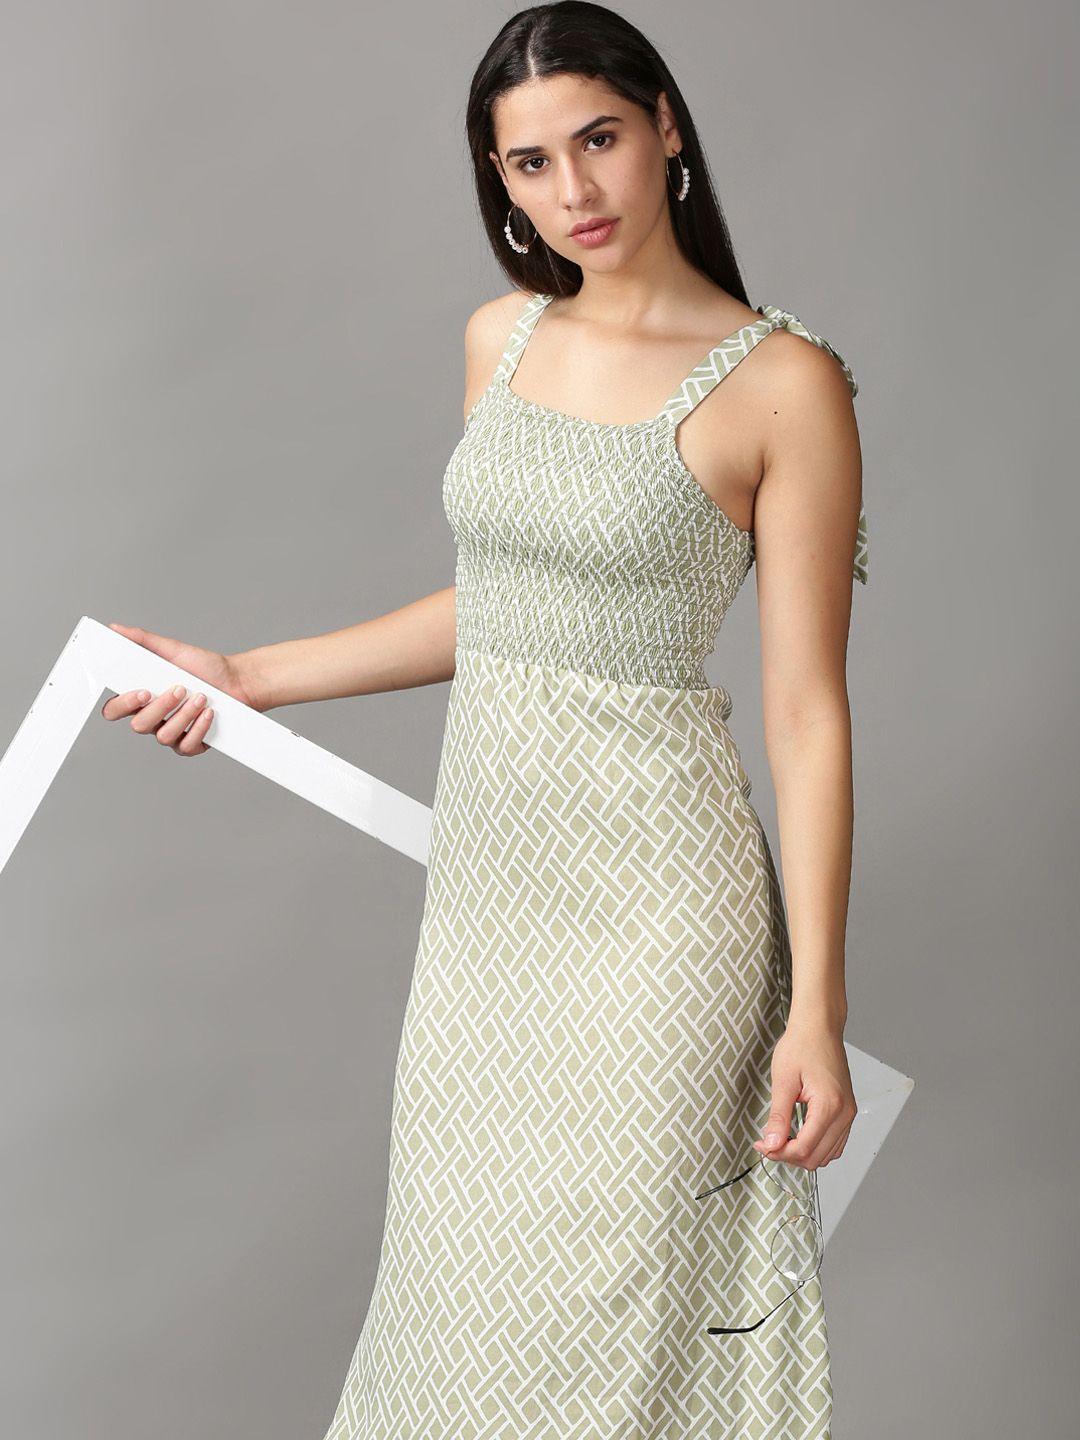 showoff-green-&-white-geometric-crepe-sheath-dress